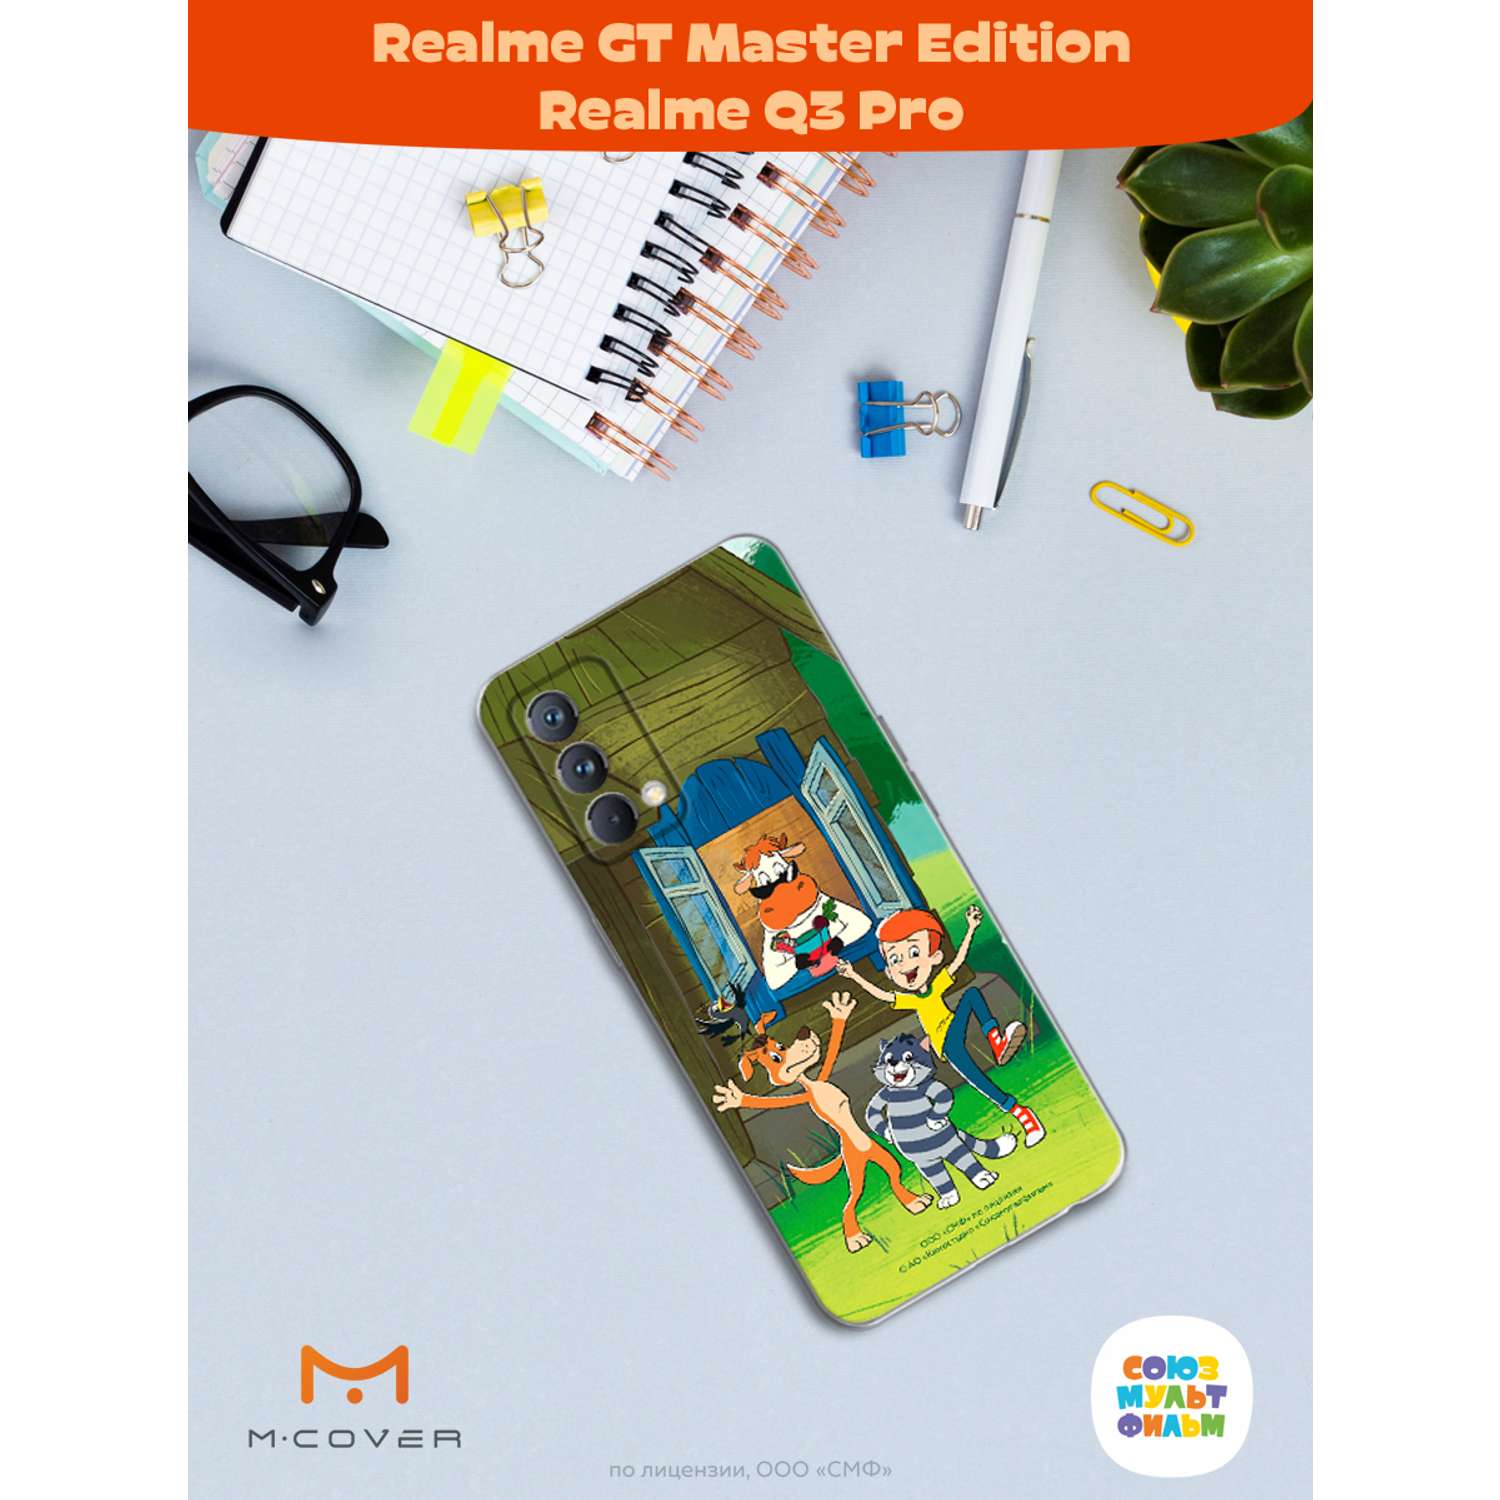 Силиконовый чехол Mcover для смартфона Realme GT Master Edition Q3 Pro Союзмультфильм Каникулы в деревне - фото 3